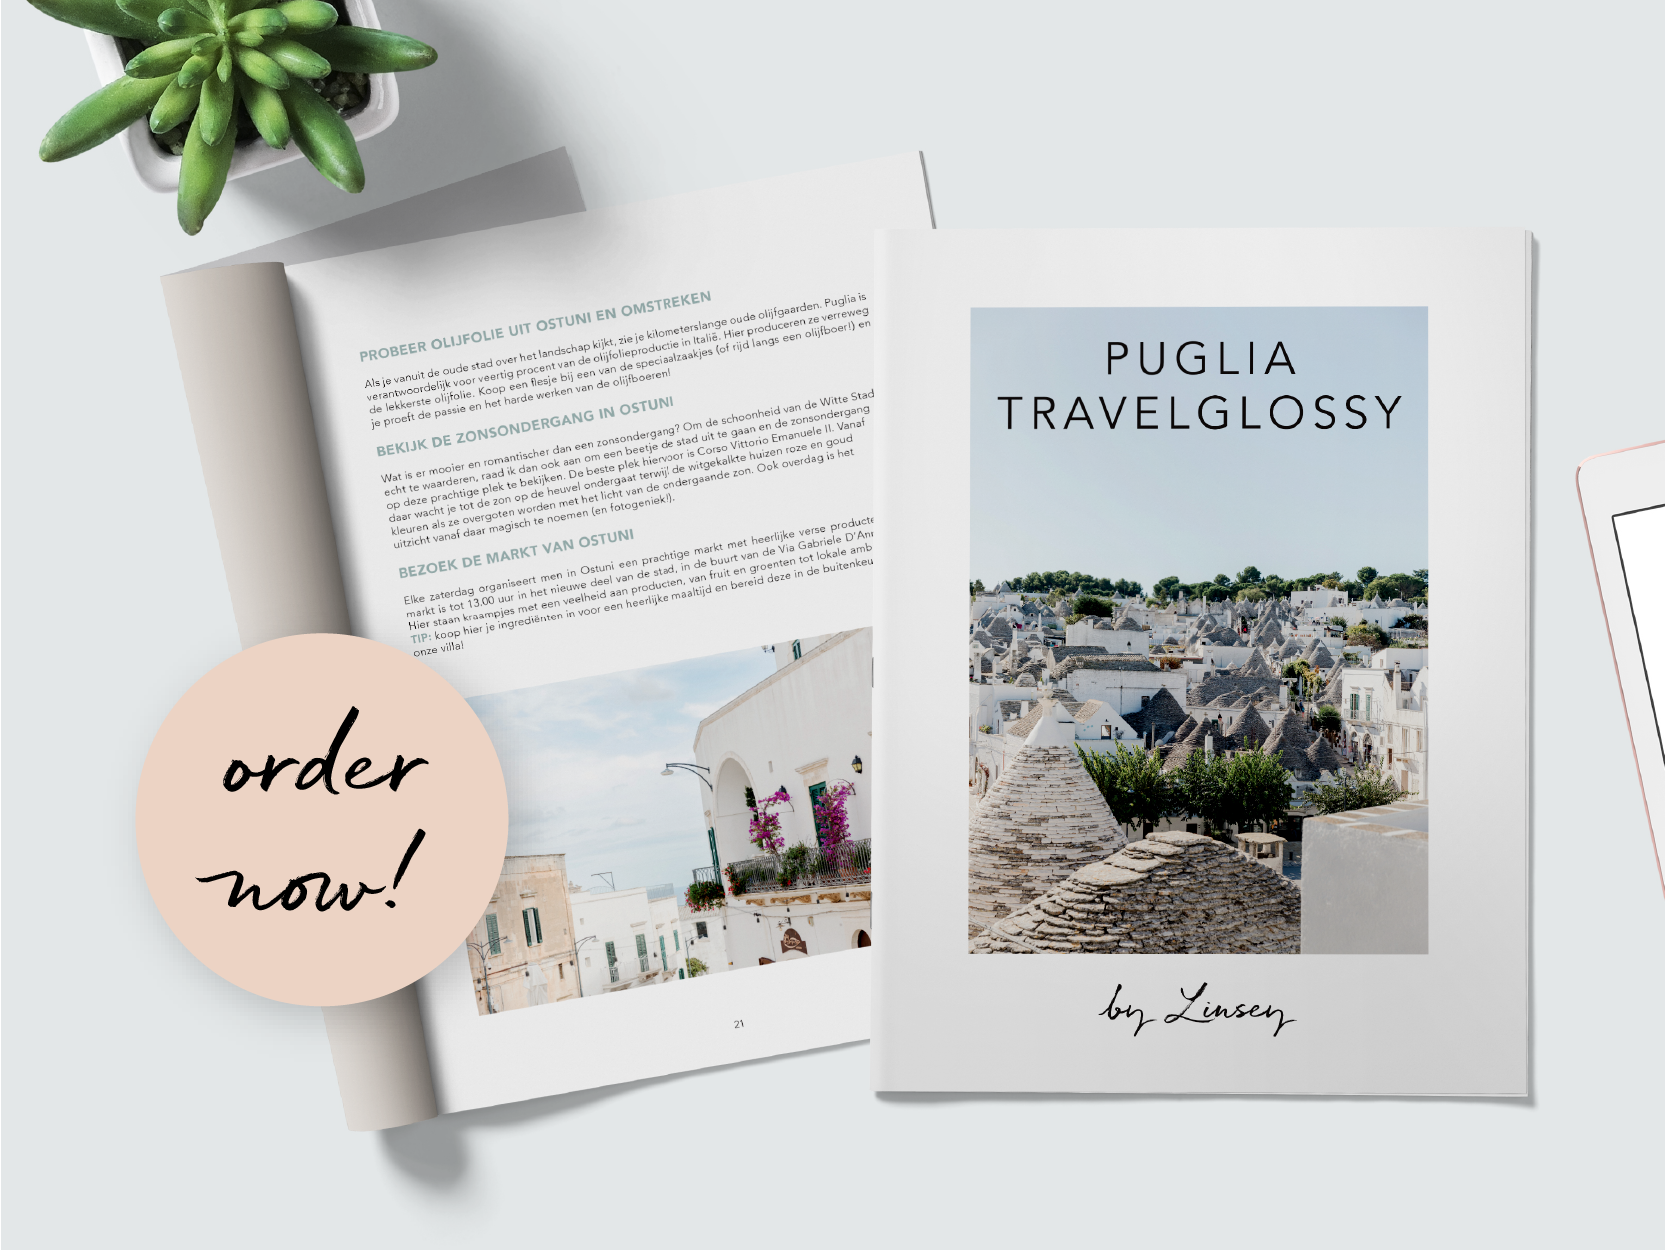 Travelglossy Puglia (digitaal/e-guide)